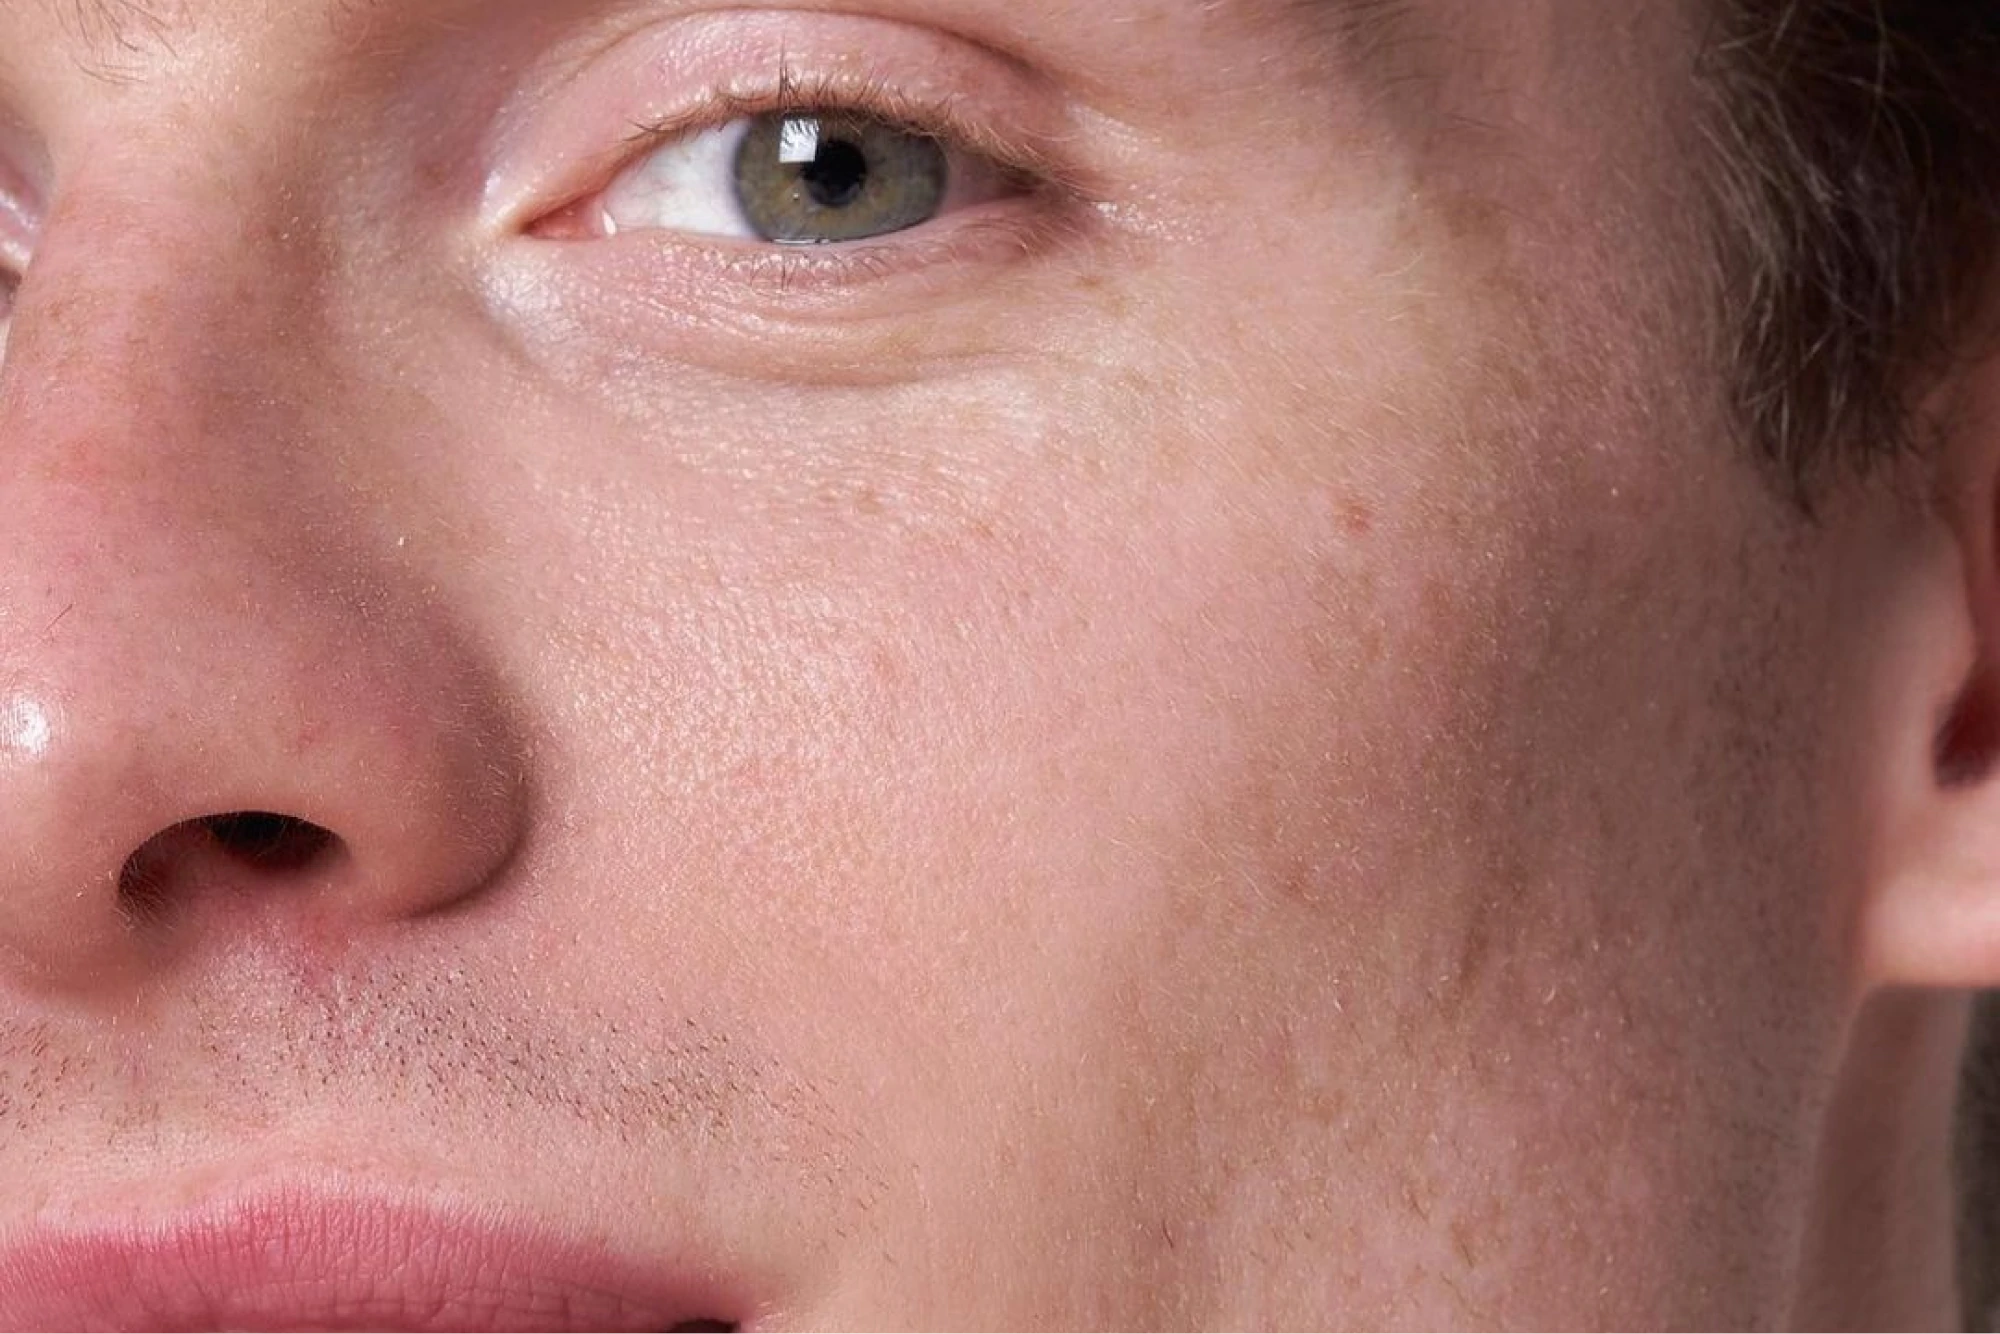 Close up of a man’s face